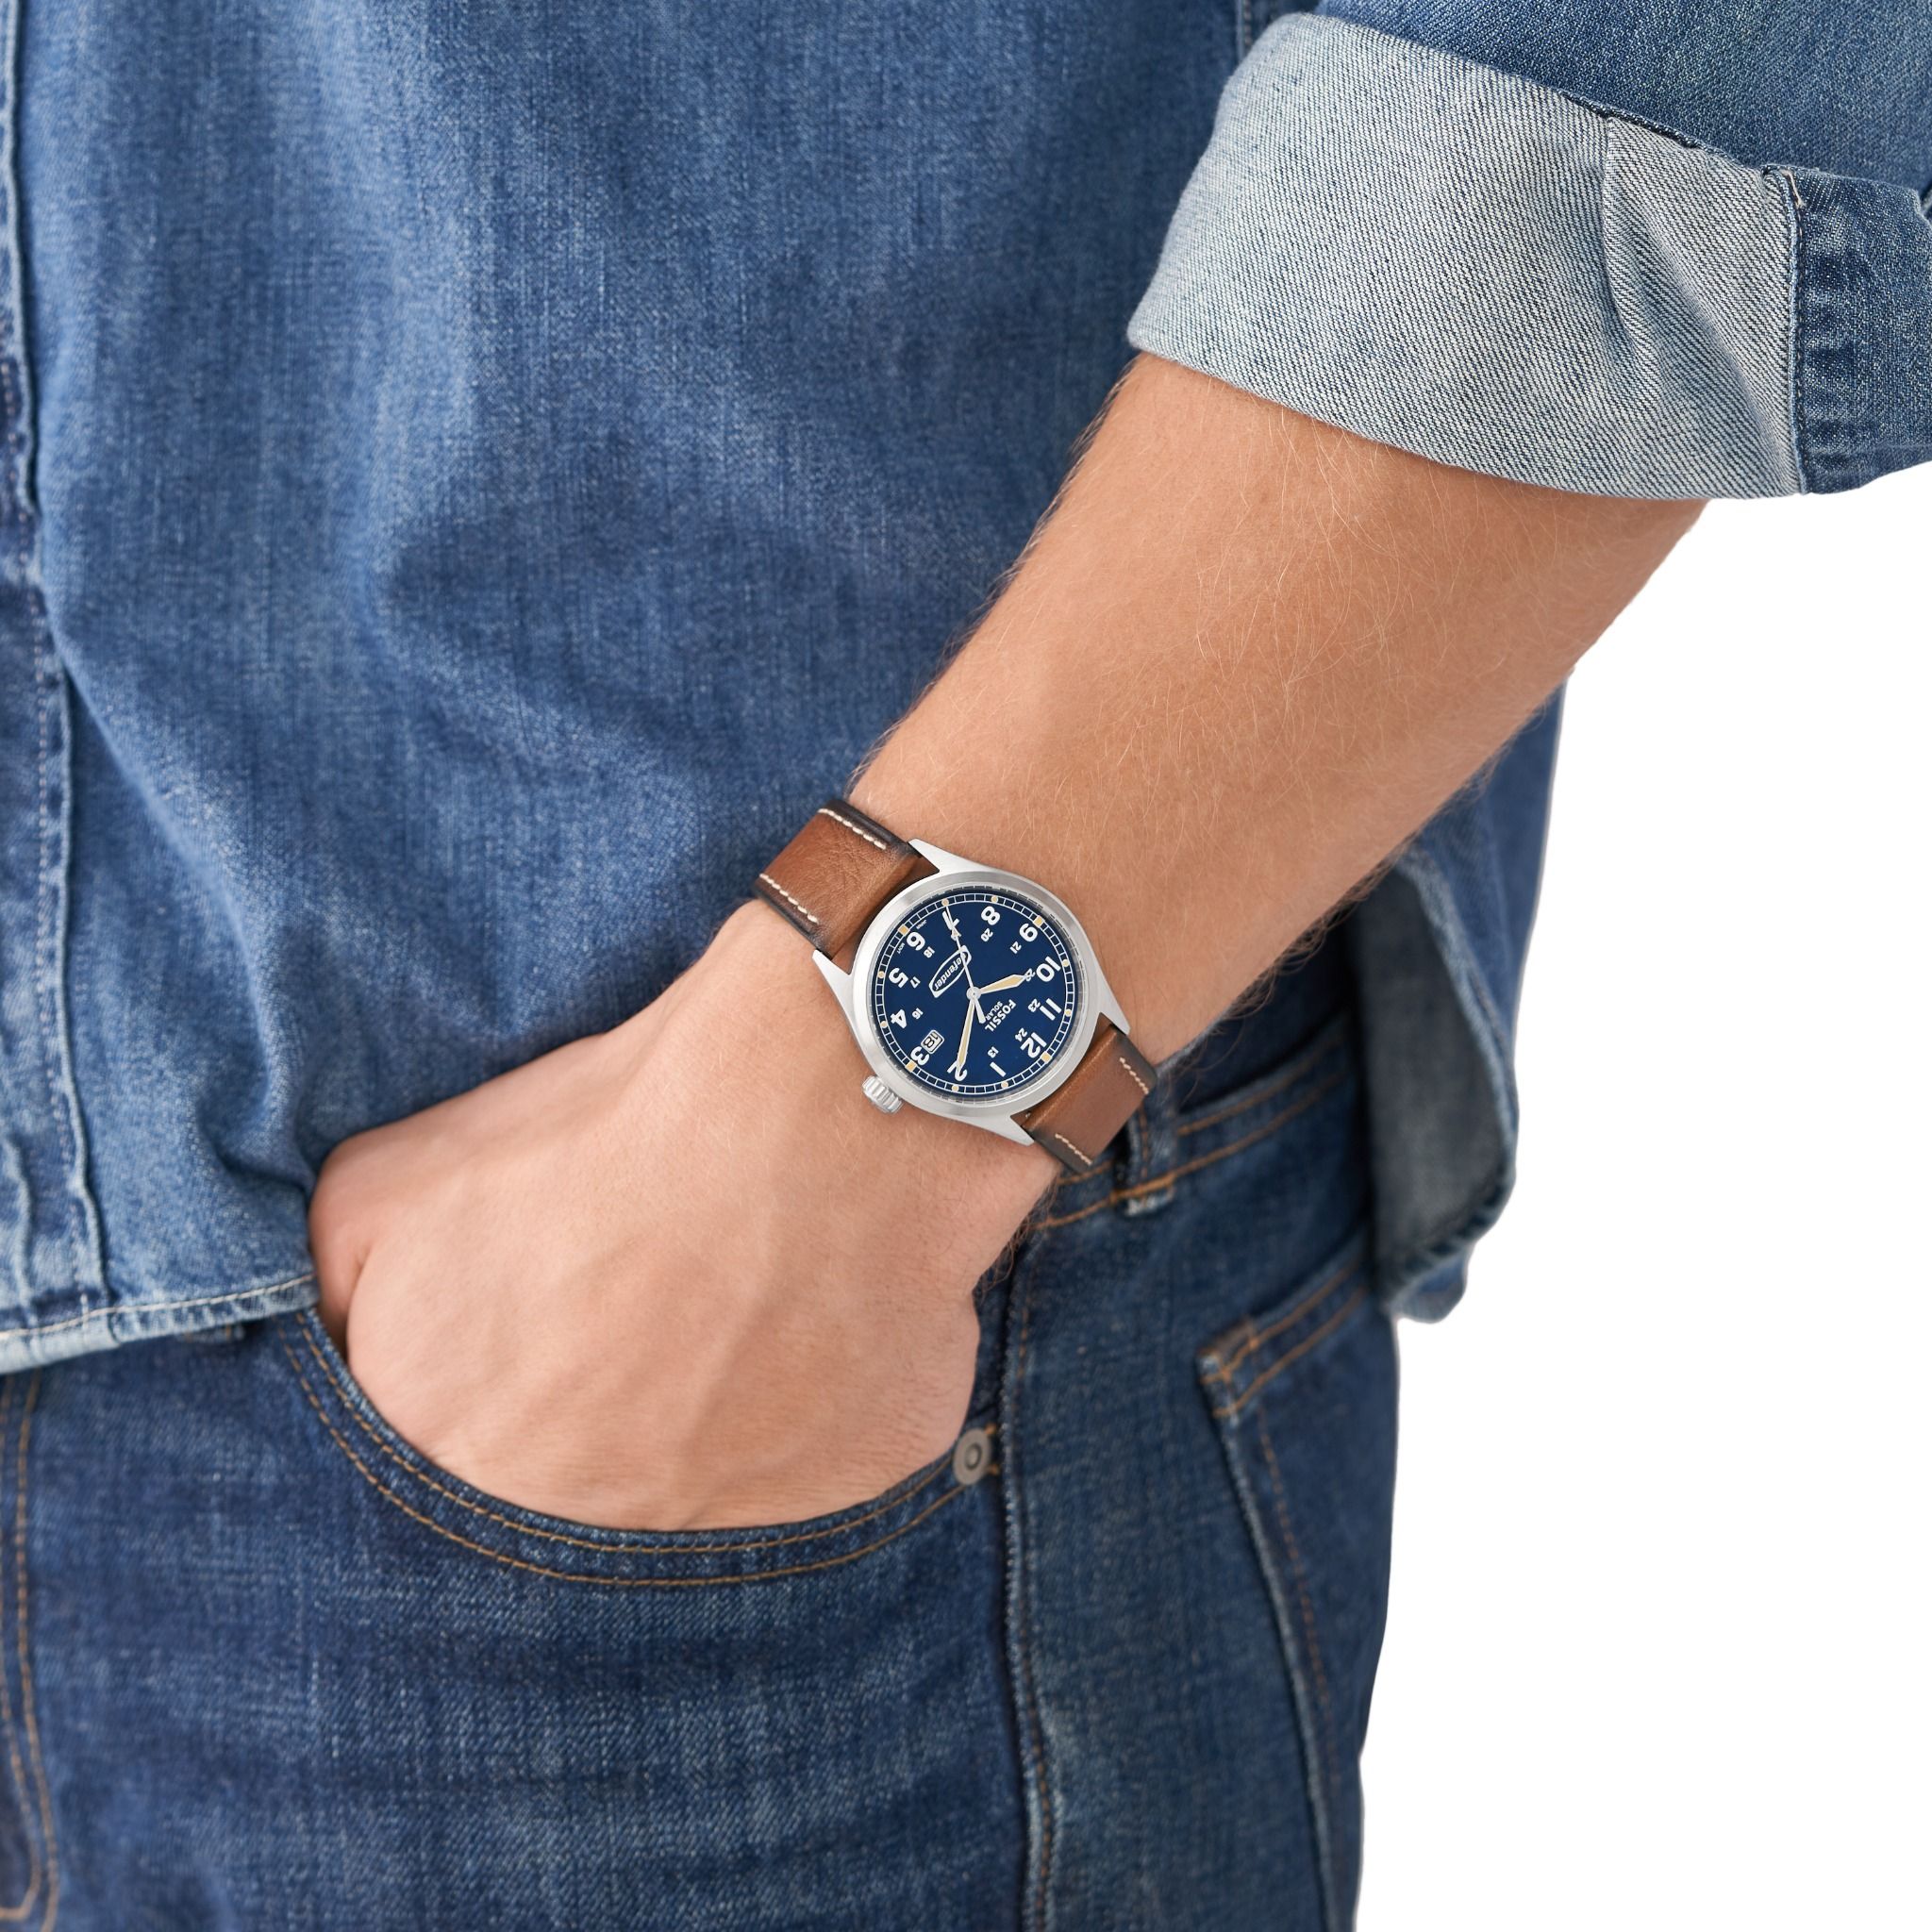  Đồng hồ nam Fossil Defender dây da FS5975 - màu nâu 